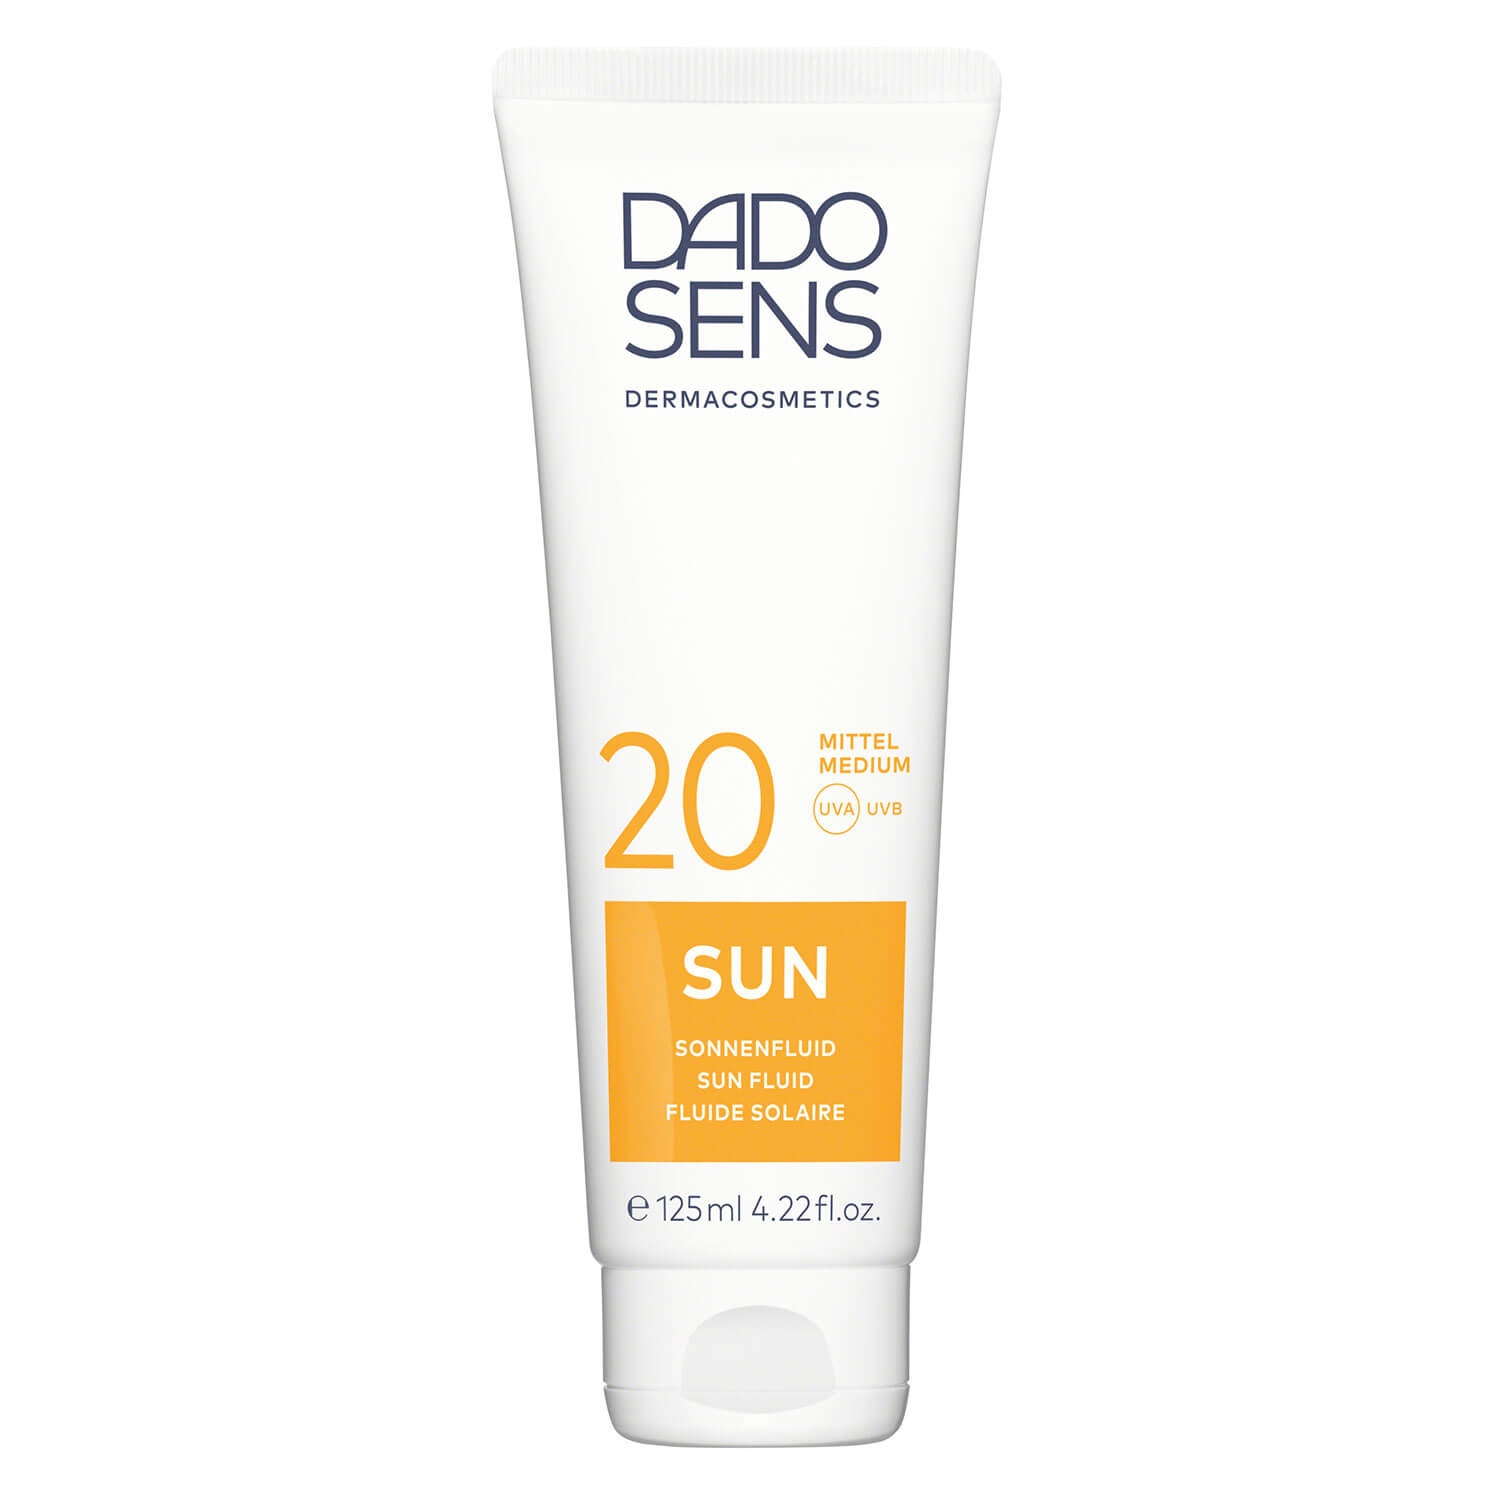 Produktbild von DADO SENS SUN - Sonnenfluid SPF 20